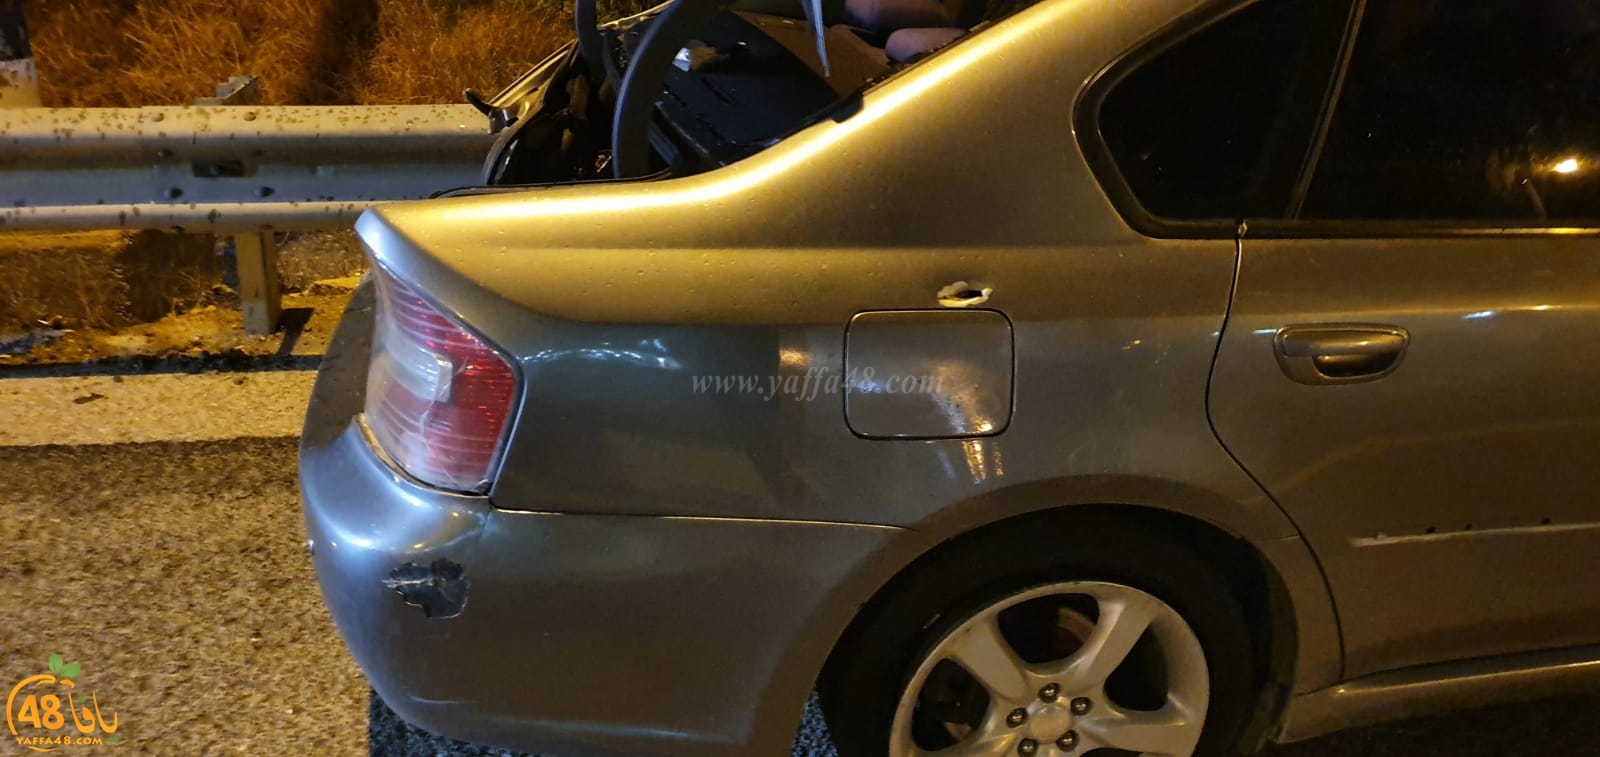 منتصف الليل: إصابة متوسّطة لشاب اثر تعرّضه لإطلاق نار بمدينة الرّملة